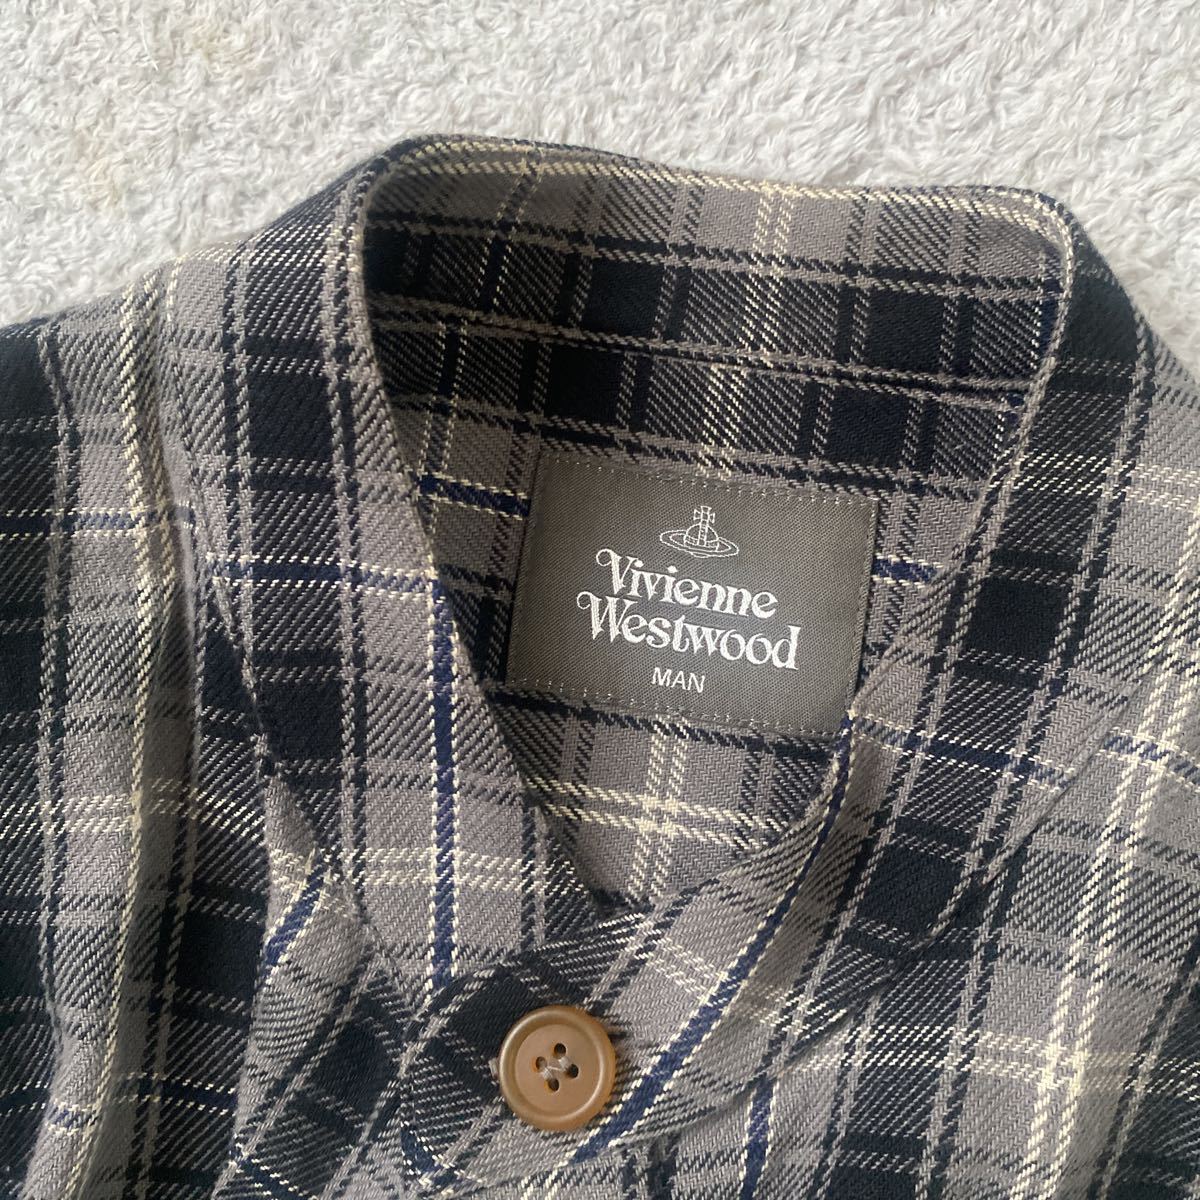 Vivienne Westwood Menロングシャツ'チェック'白黒'長袖シャツ'メンズ